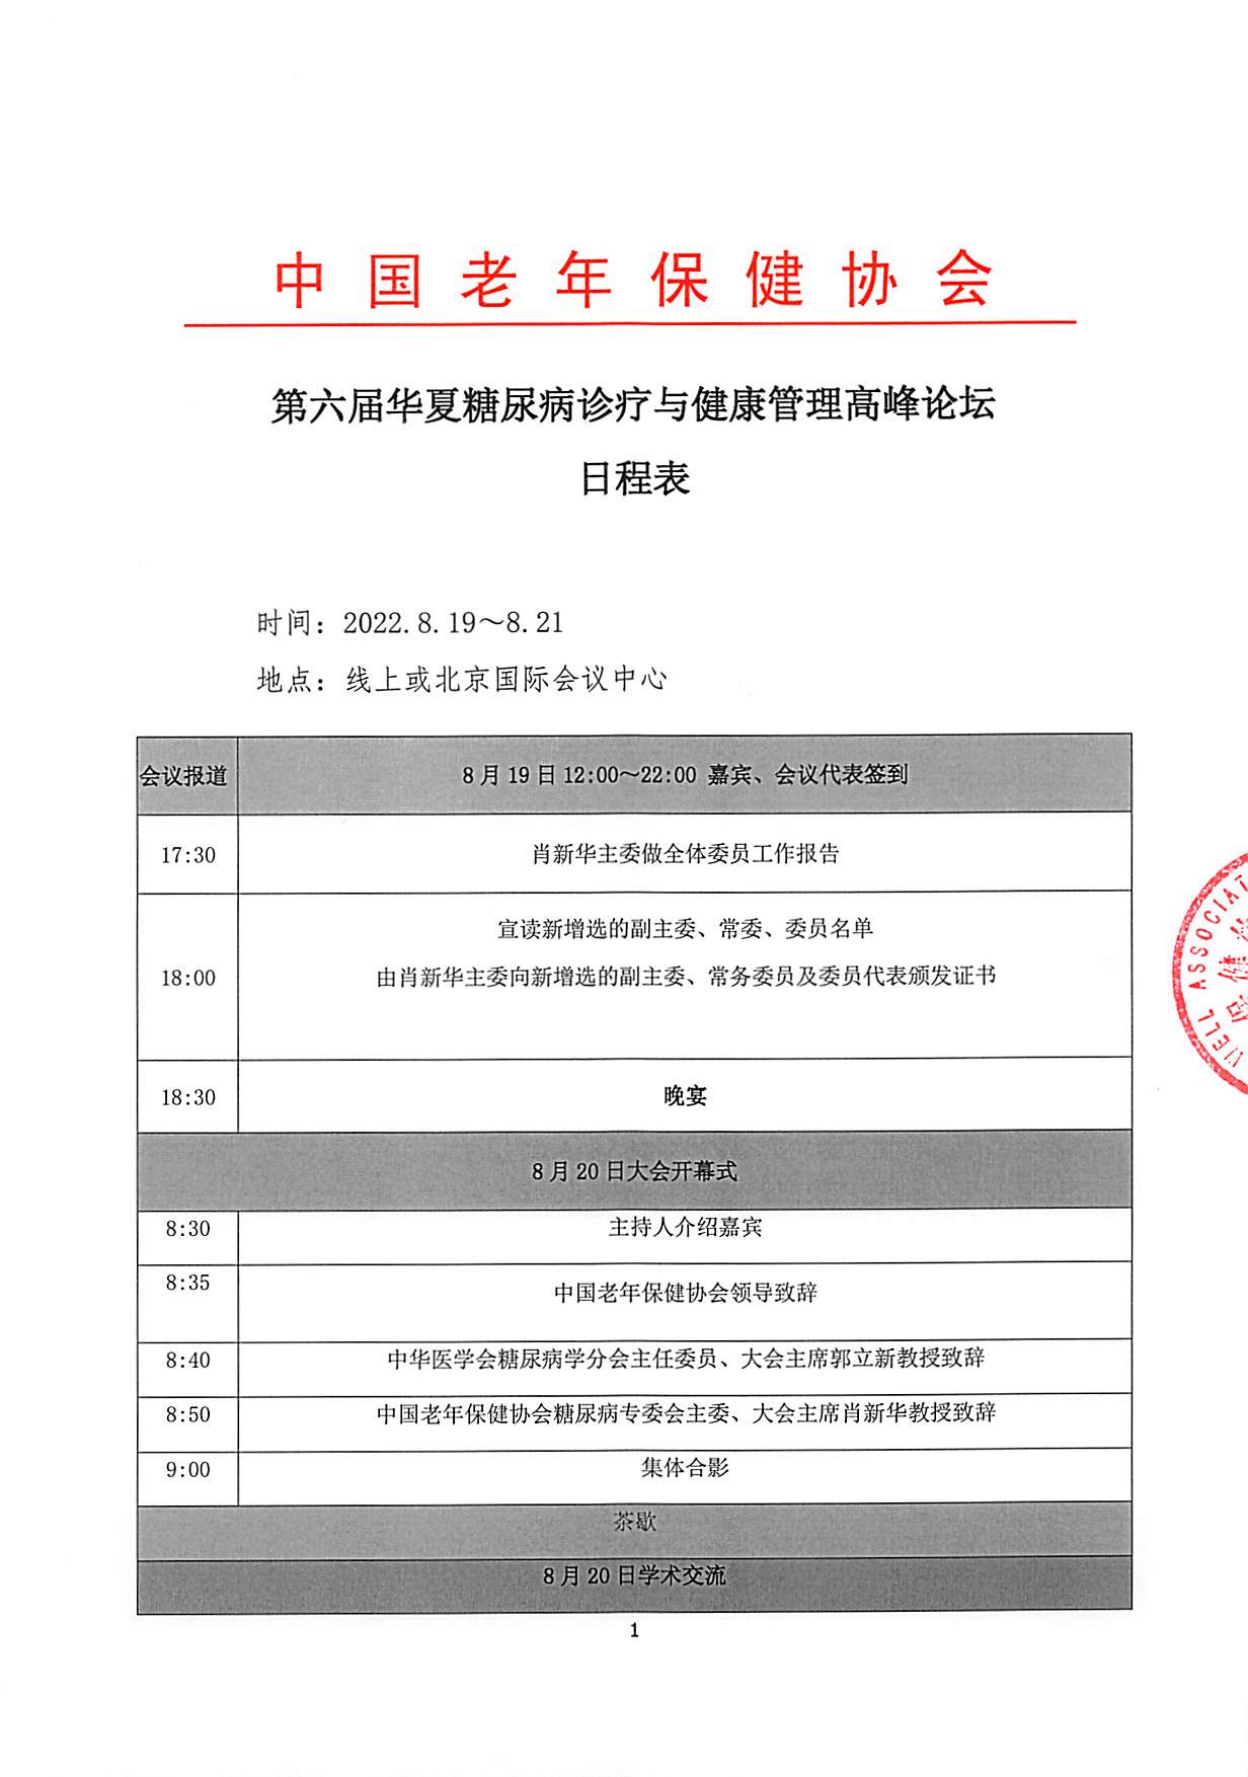 第六屆華夏糖尿病診療與健康管理論壇 日程表